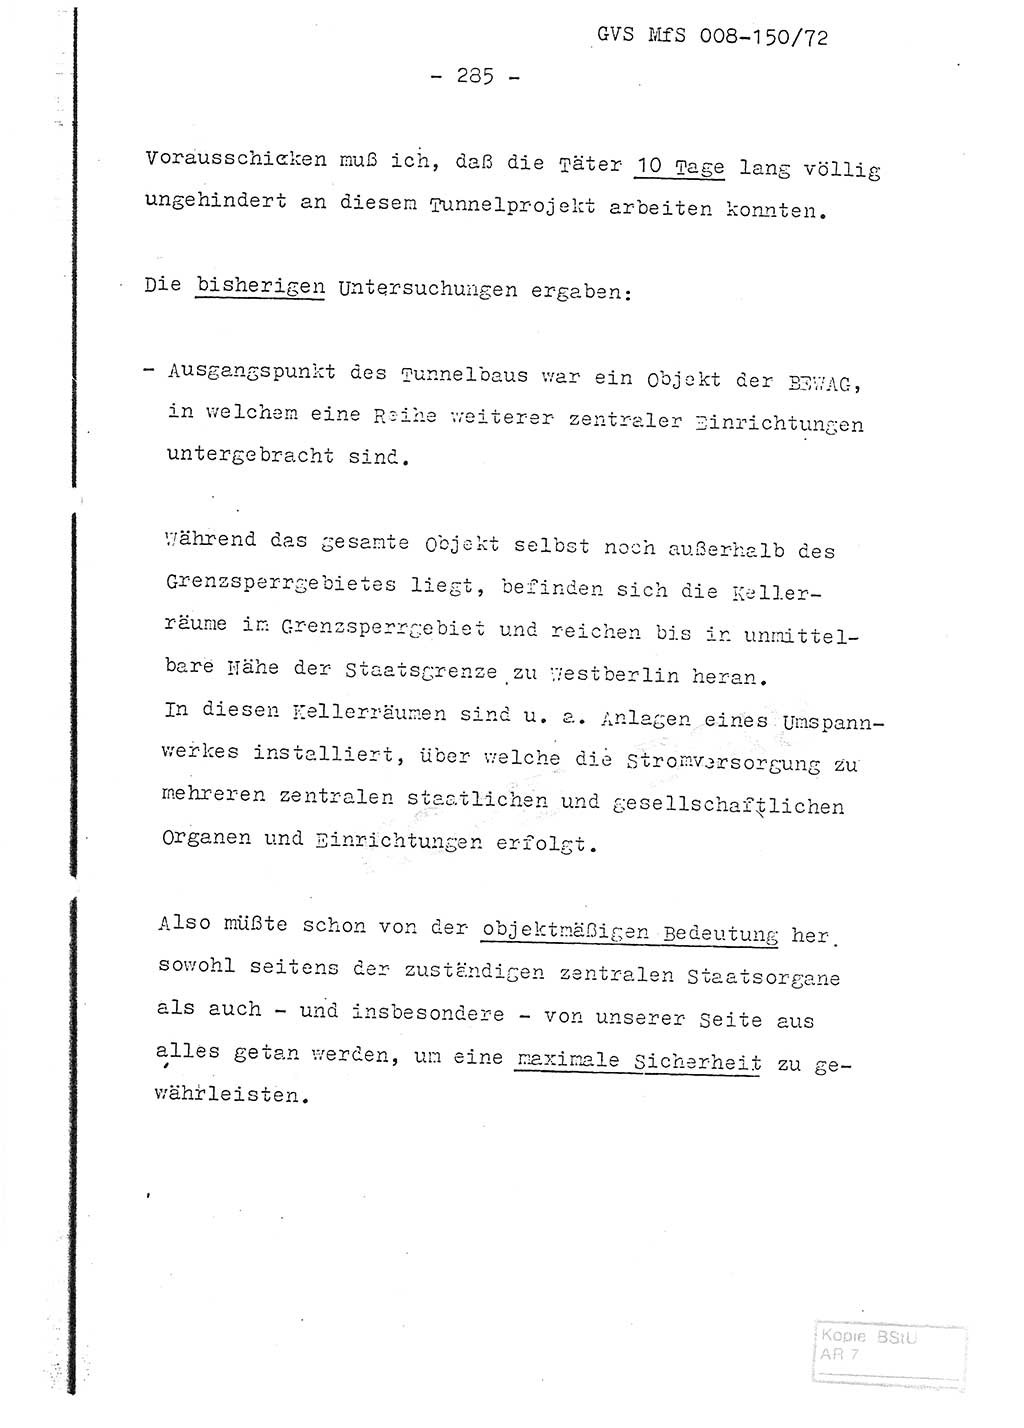 Referat (Entwurf) des Genossen Minister (Generaloberst Erich Mielke) auf der Dienstkonferenz 1972, Ministerium für Staatssicherheit (MfS) [Deutsche Demokratische Republik (DDR)], Der Minister, Geheime Verschlußsache (GVS) 008-150/72, Berlin 25.2.1972, Seite 285 (Ref. Entw. DK MfS DDR Min. GVS 008-150/72 1972, S. 285)